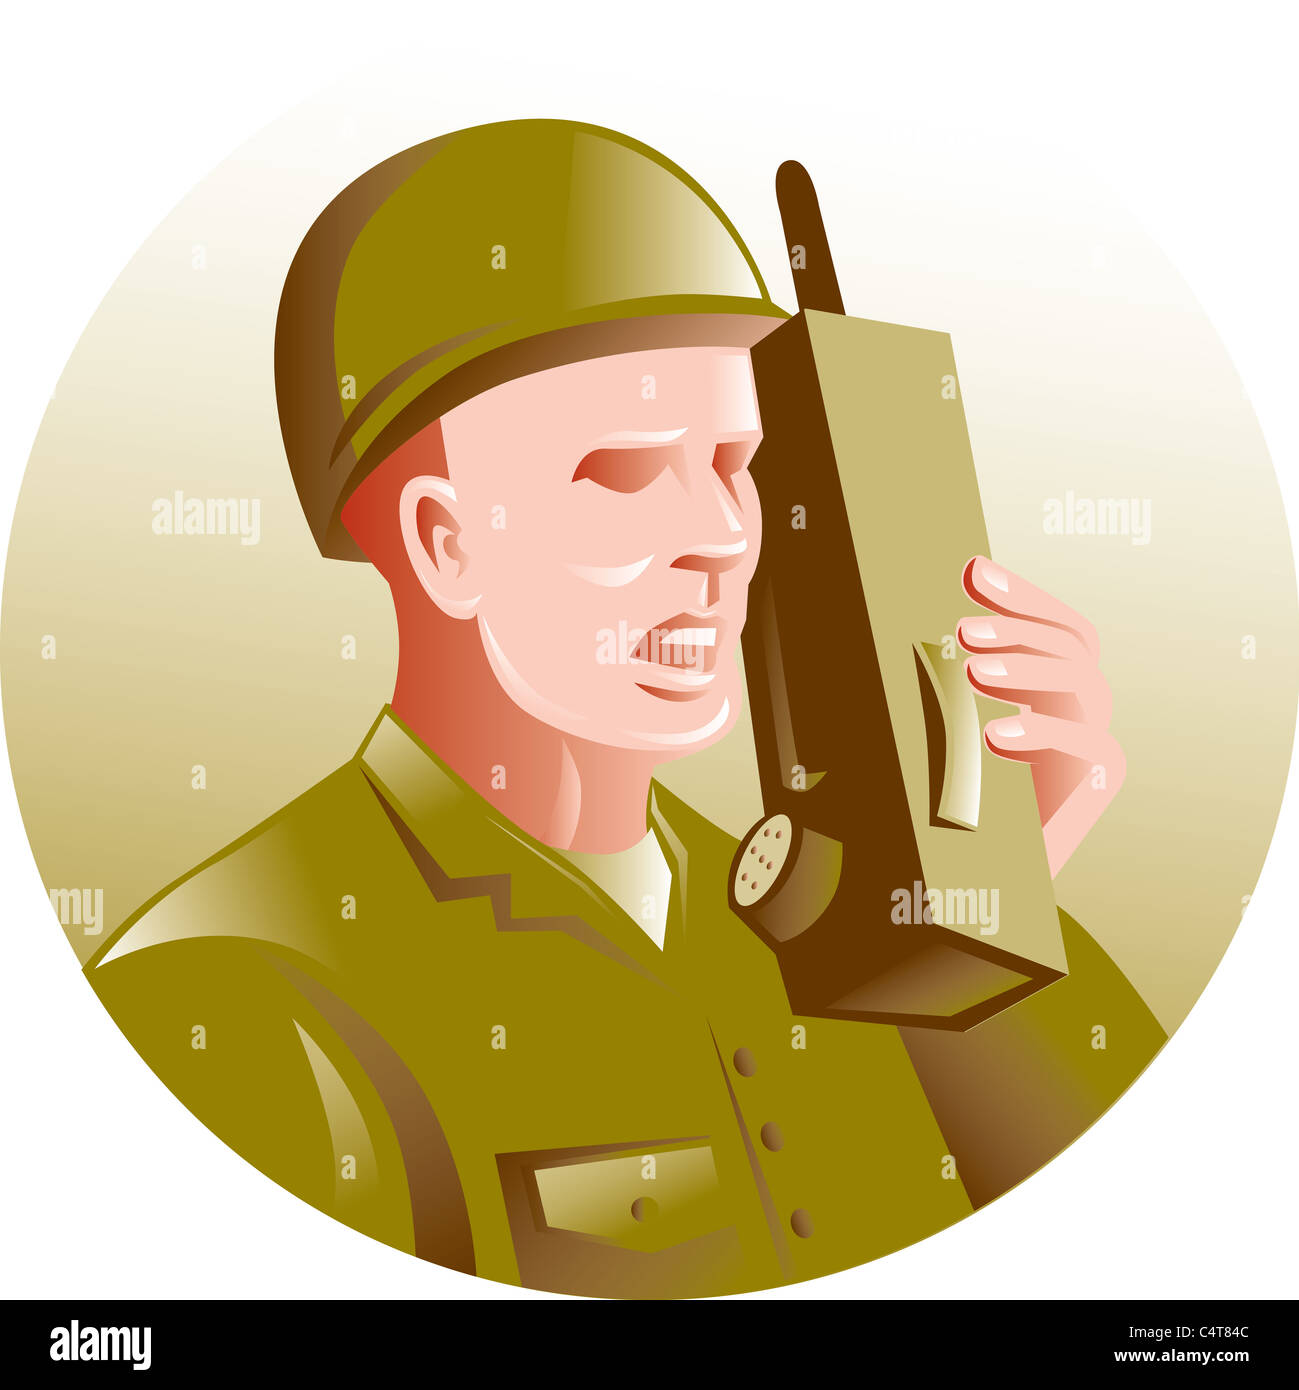 Abbildung eines militärischen Soldaten sprechen über Radio Walkie-talkie im inneren Kreis im retro-Stil gemacht. Stockfoto